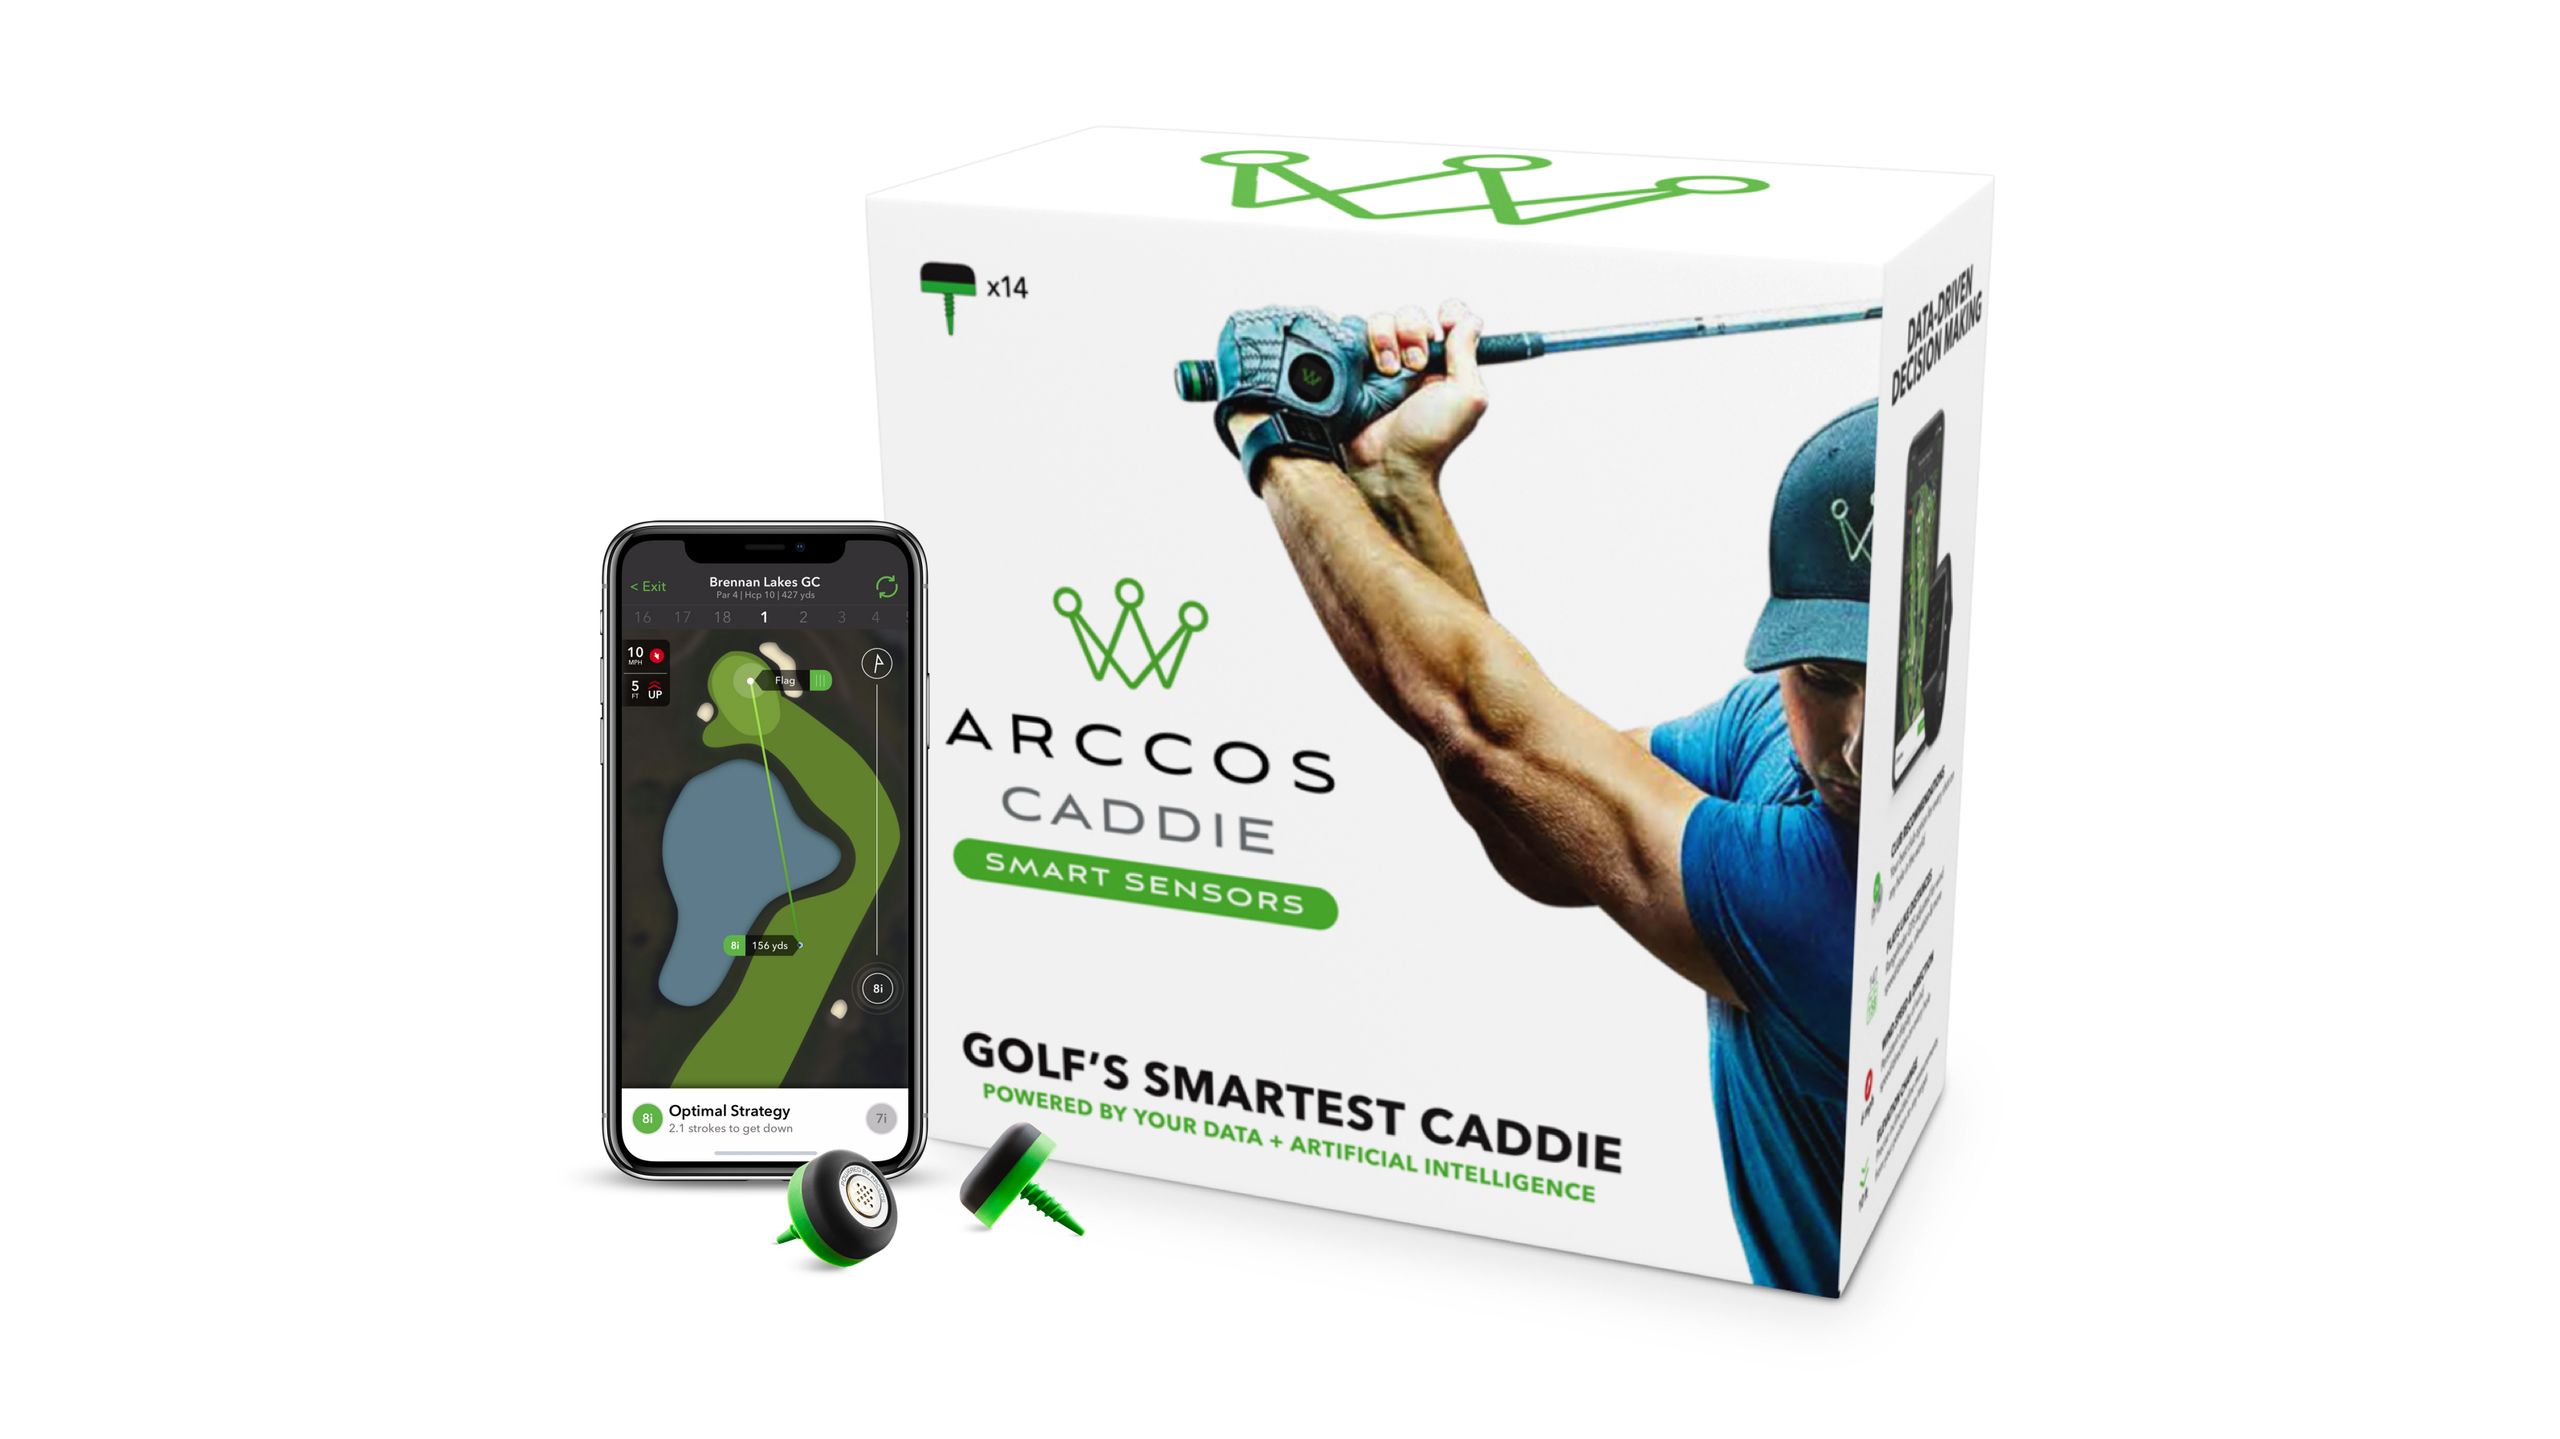 bedste gaver til golfspillere: Arccos Caddie Smart sensorer